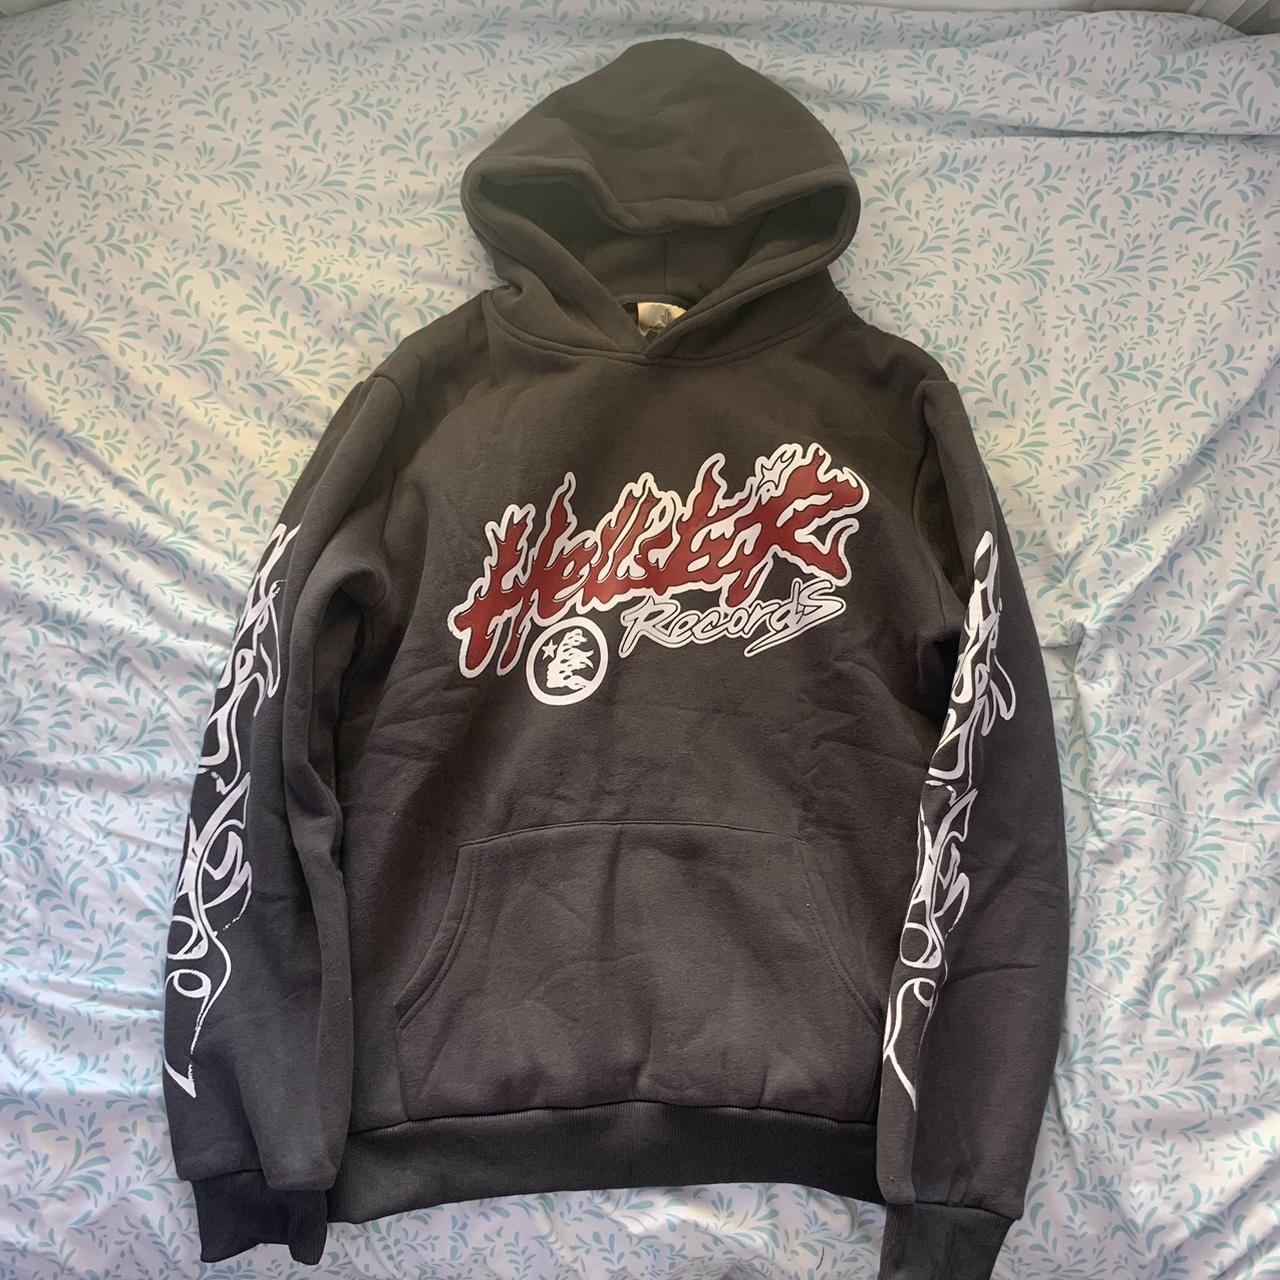 Hellstar hoodie, custom print, dark grey, brand... - Depop